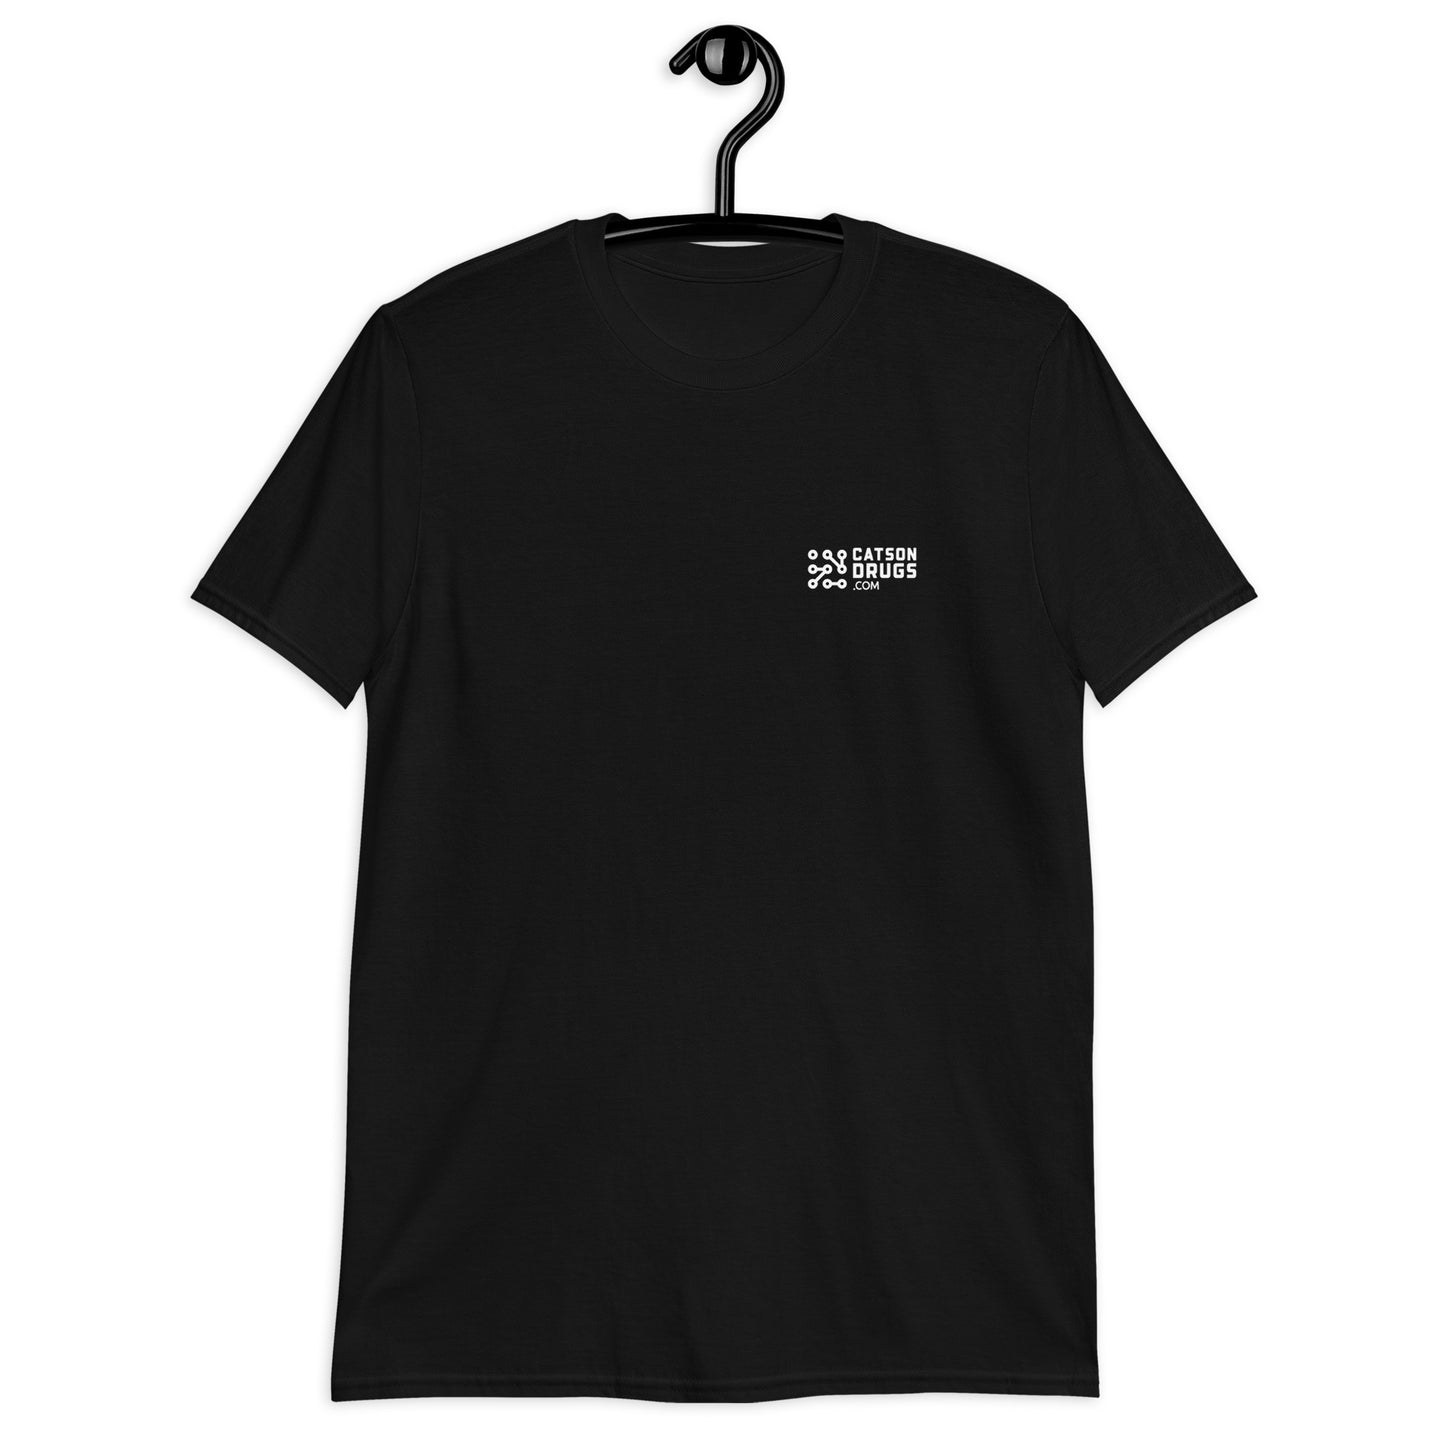 Follow the Beat -  Unisex T-Shirt